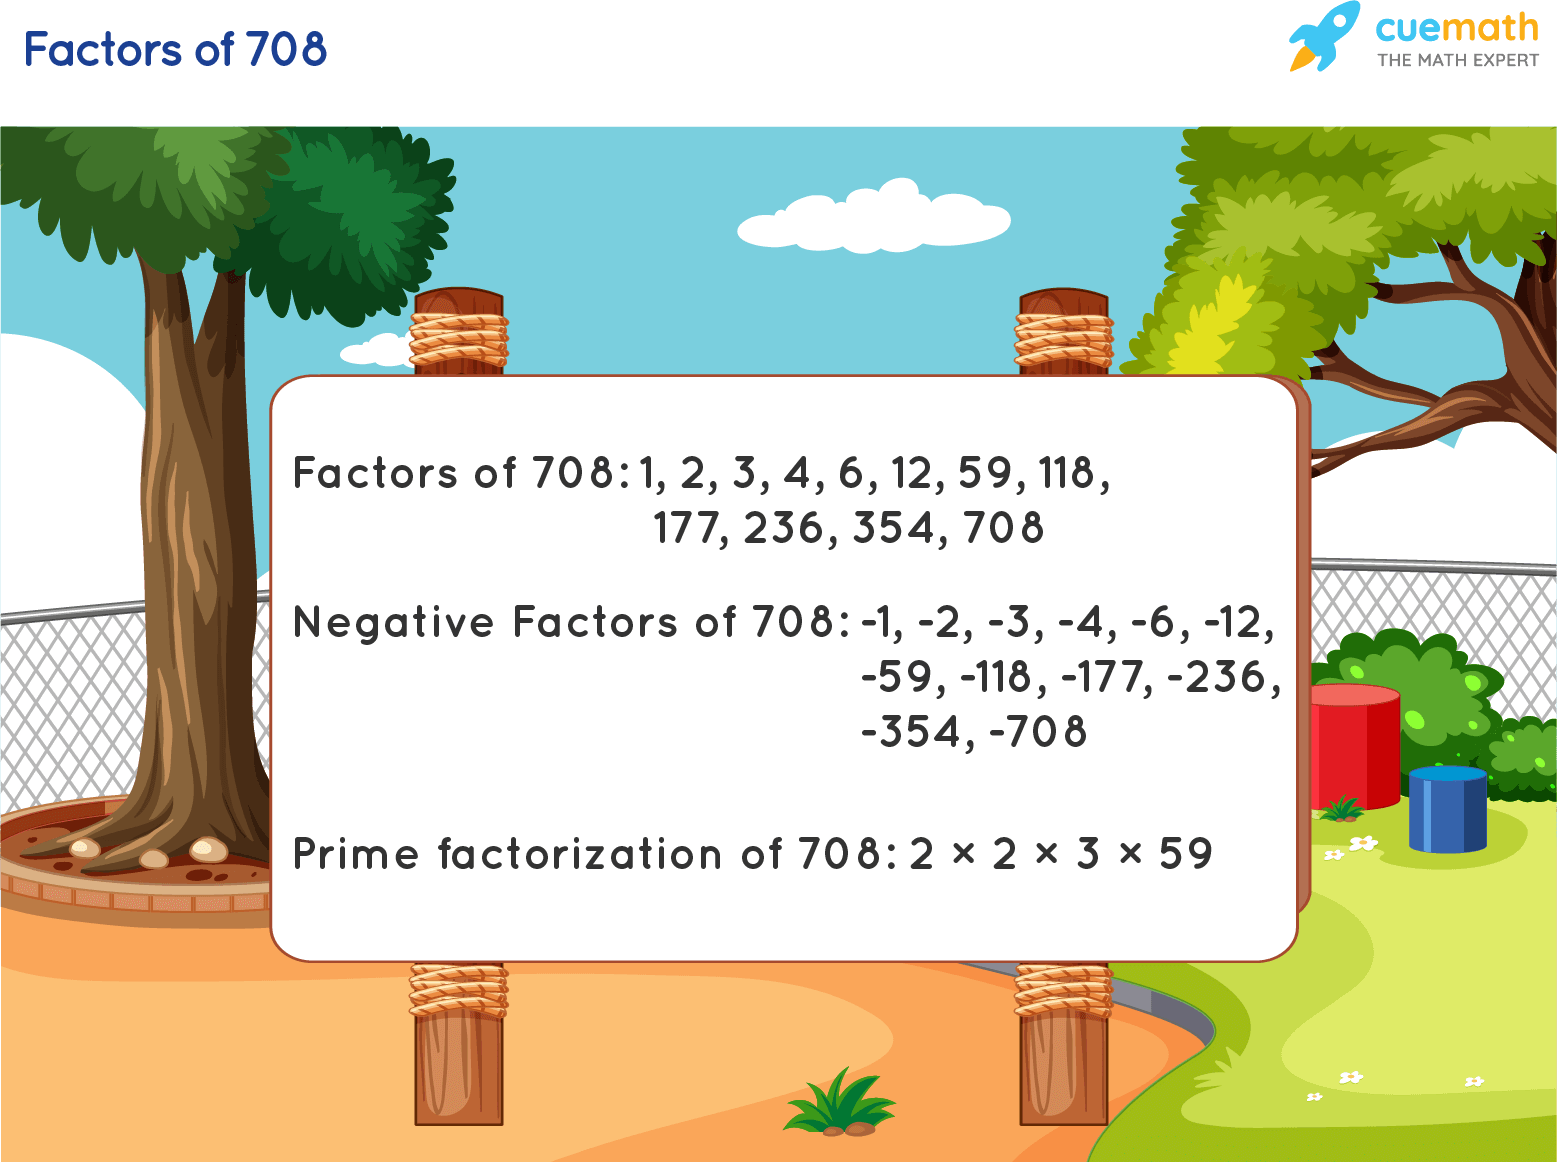 Factors of 708